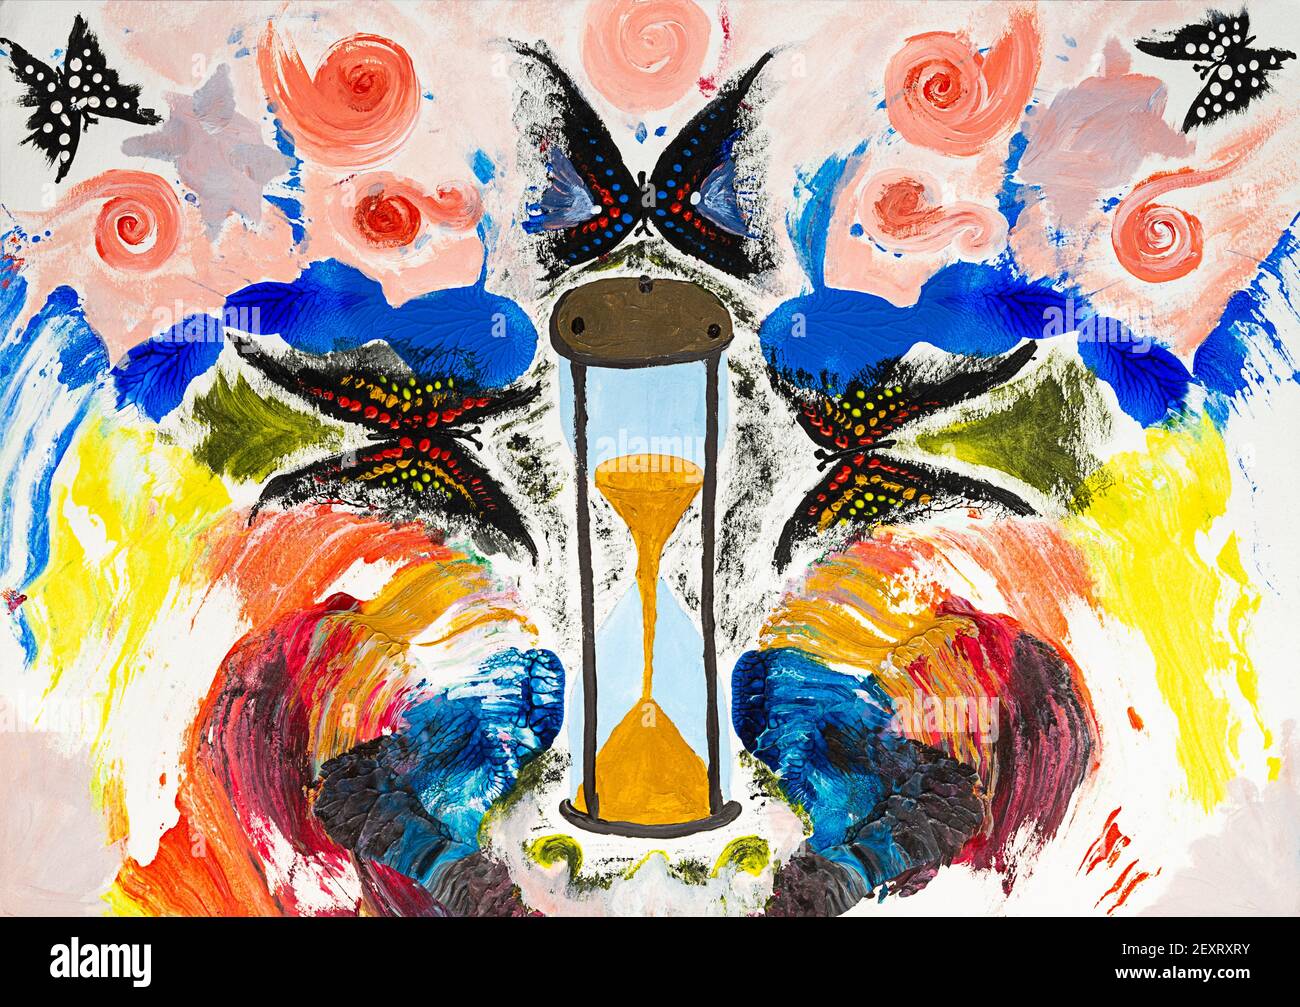 Peinture abstraite aux couleurs vives papillons et sablier Photo Stock -  Alamy